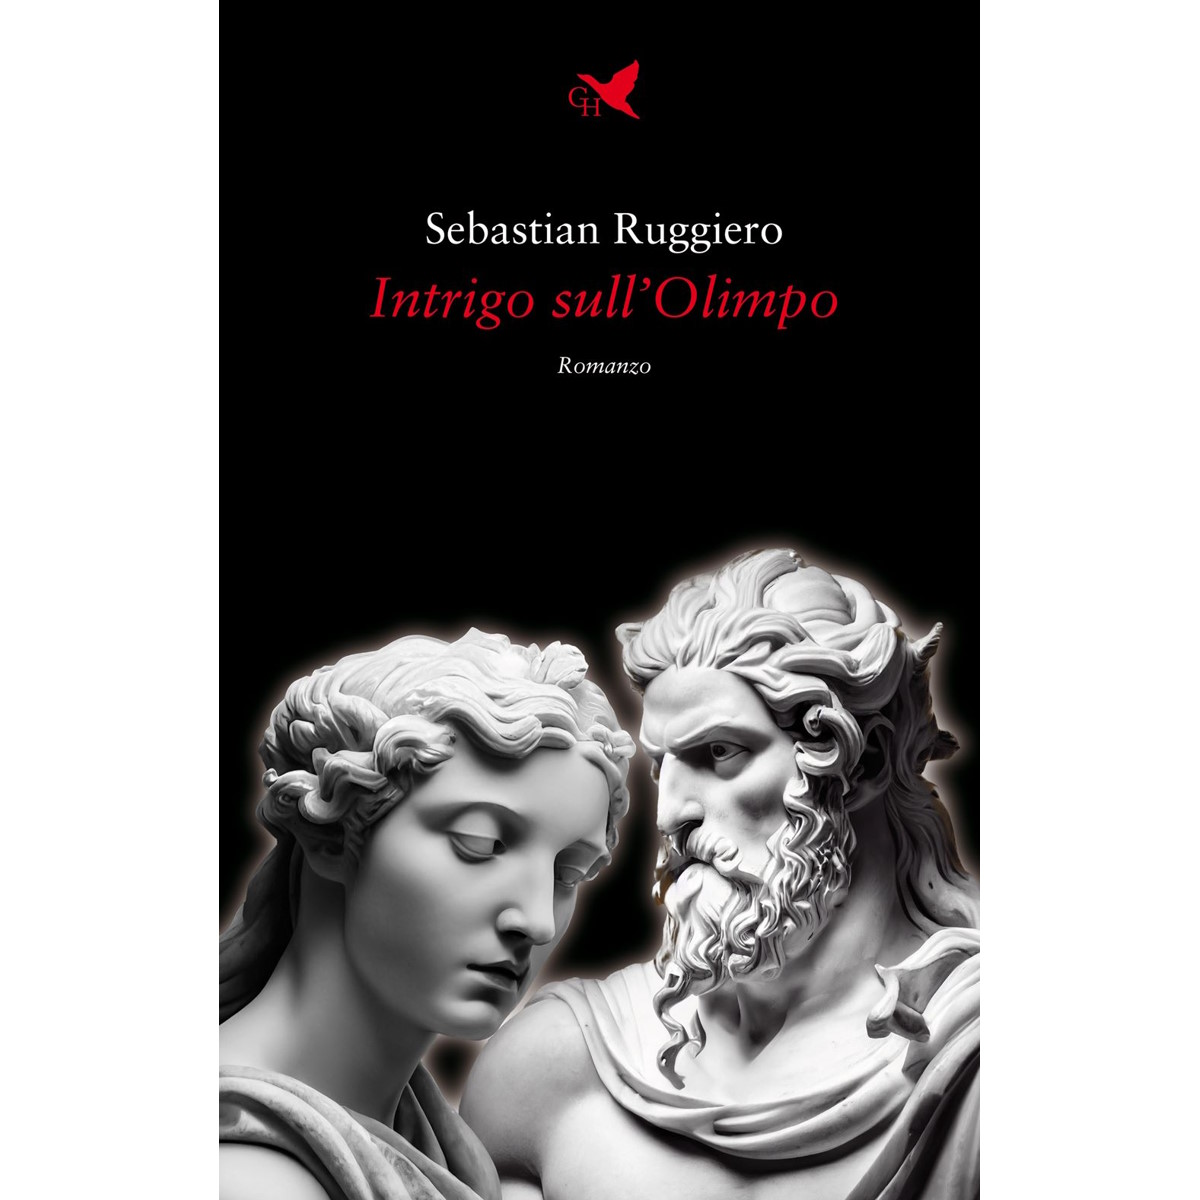 Sebastian Ruggiero - Il romanzo “Intrigo sull’Olimpo”